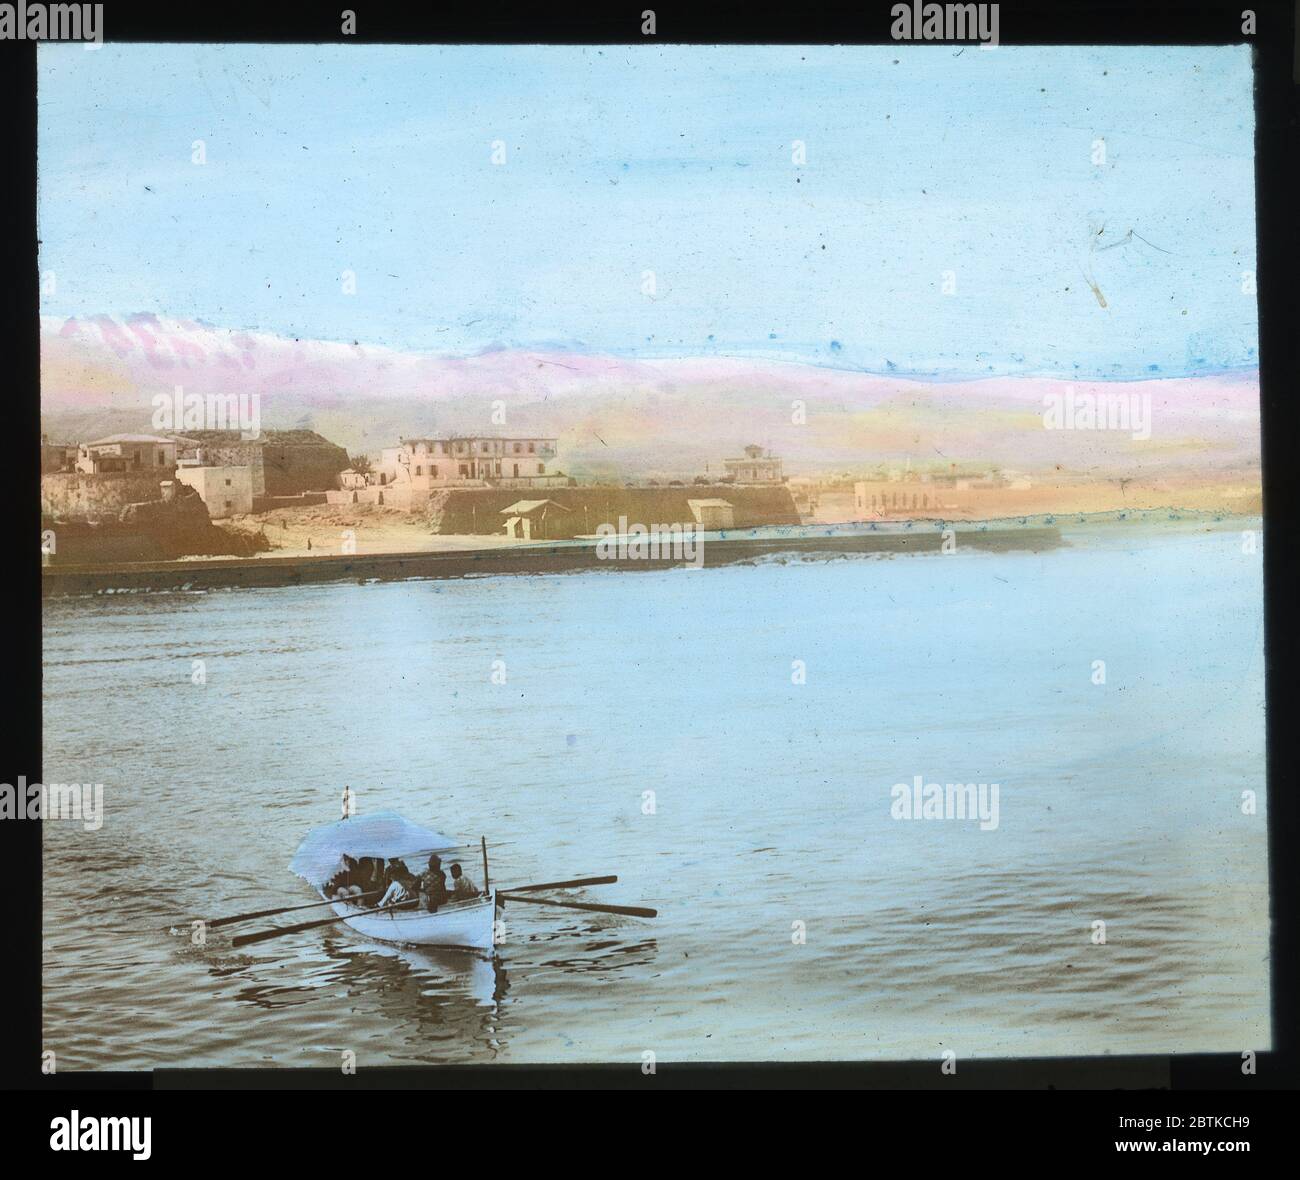 Panorama de la Canée / Crète. Diapositive colorée à la main d'environ 1910. Photographie sur une plaque de verre sec de la collection Herry W. Schaefer. Banque D'Images